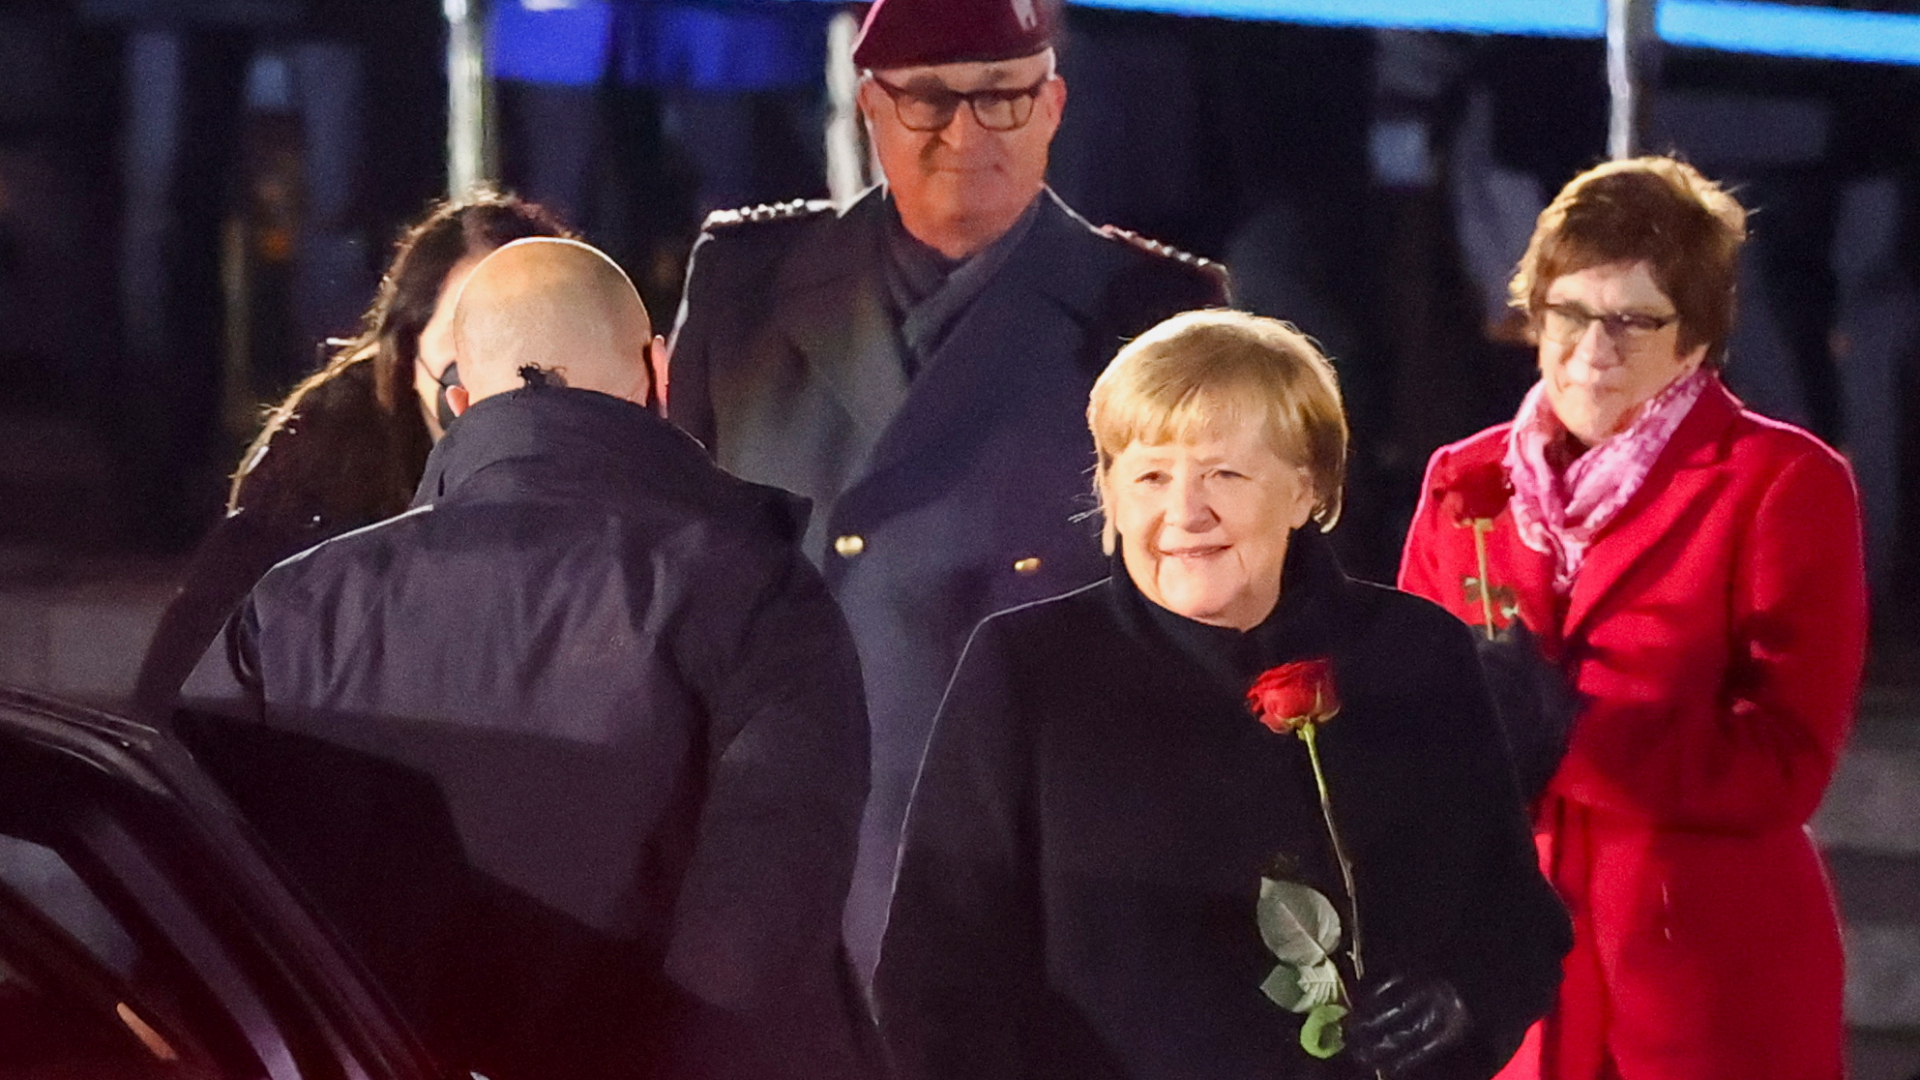 Bundeskanzlerin Angela Merkel beim Großen Zapfenstreich zu ihrem Ausscheiden aus dem Amt | REUTERS